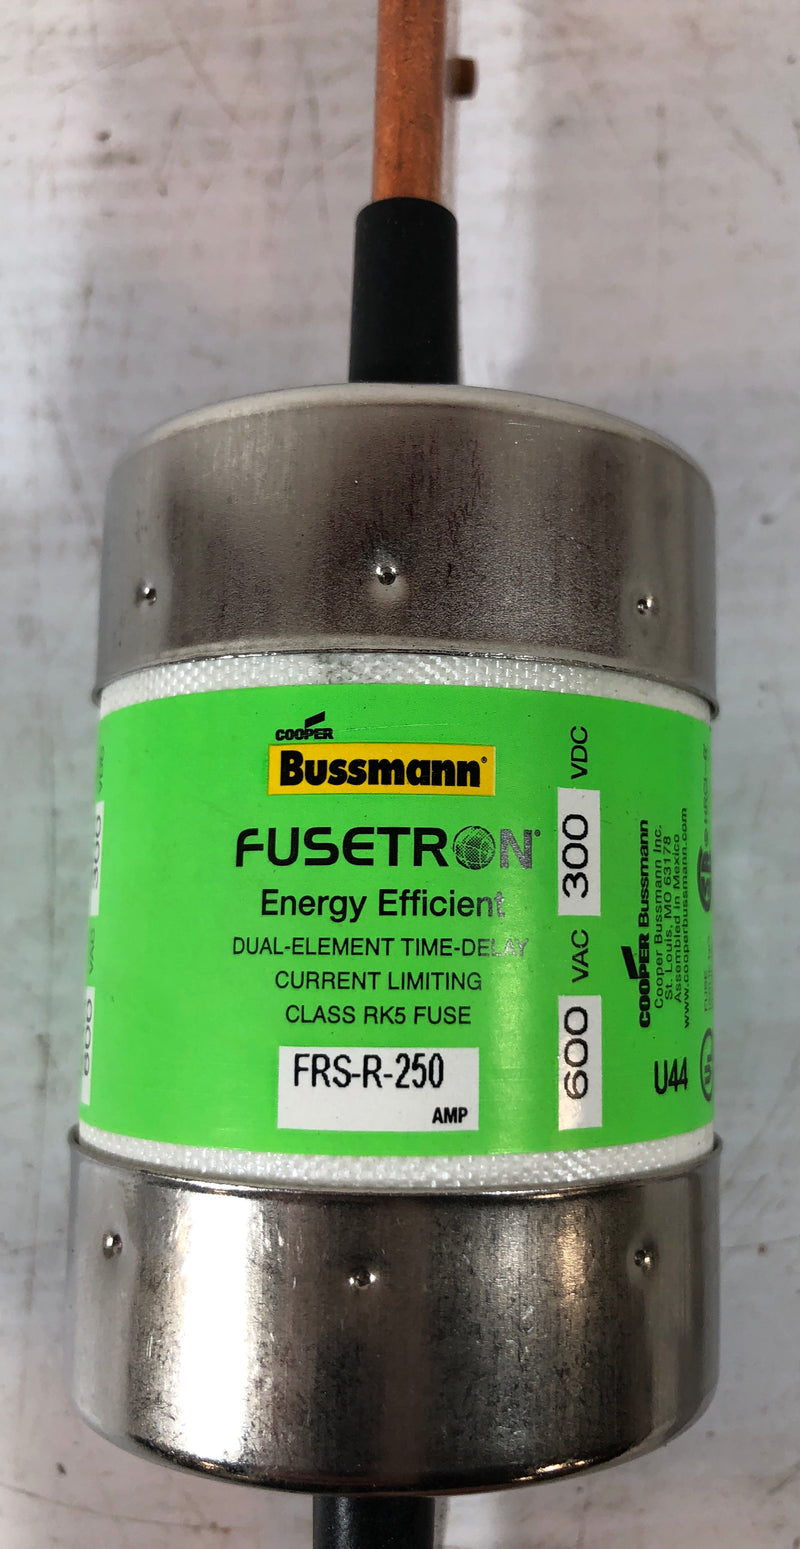 Bussman Fusetron Energy Efficient Dual Element Time Delay Fuse FRS-R-250